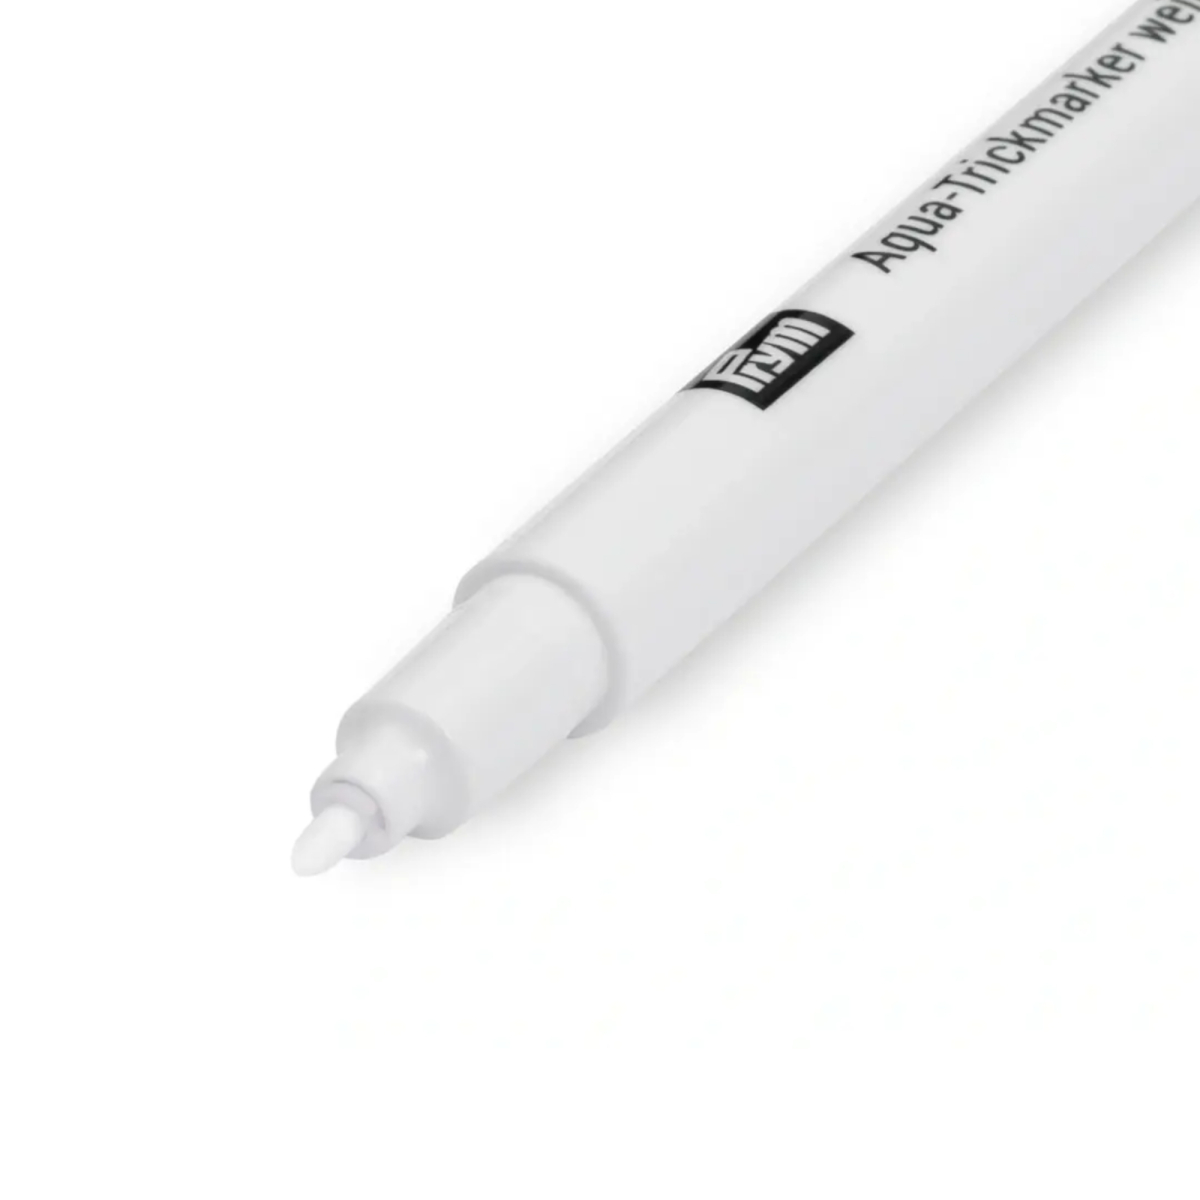 Crayon marqueur blanc effaçable - couture par